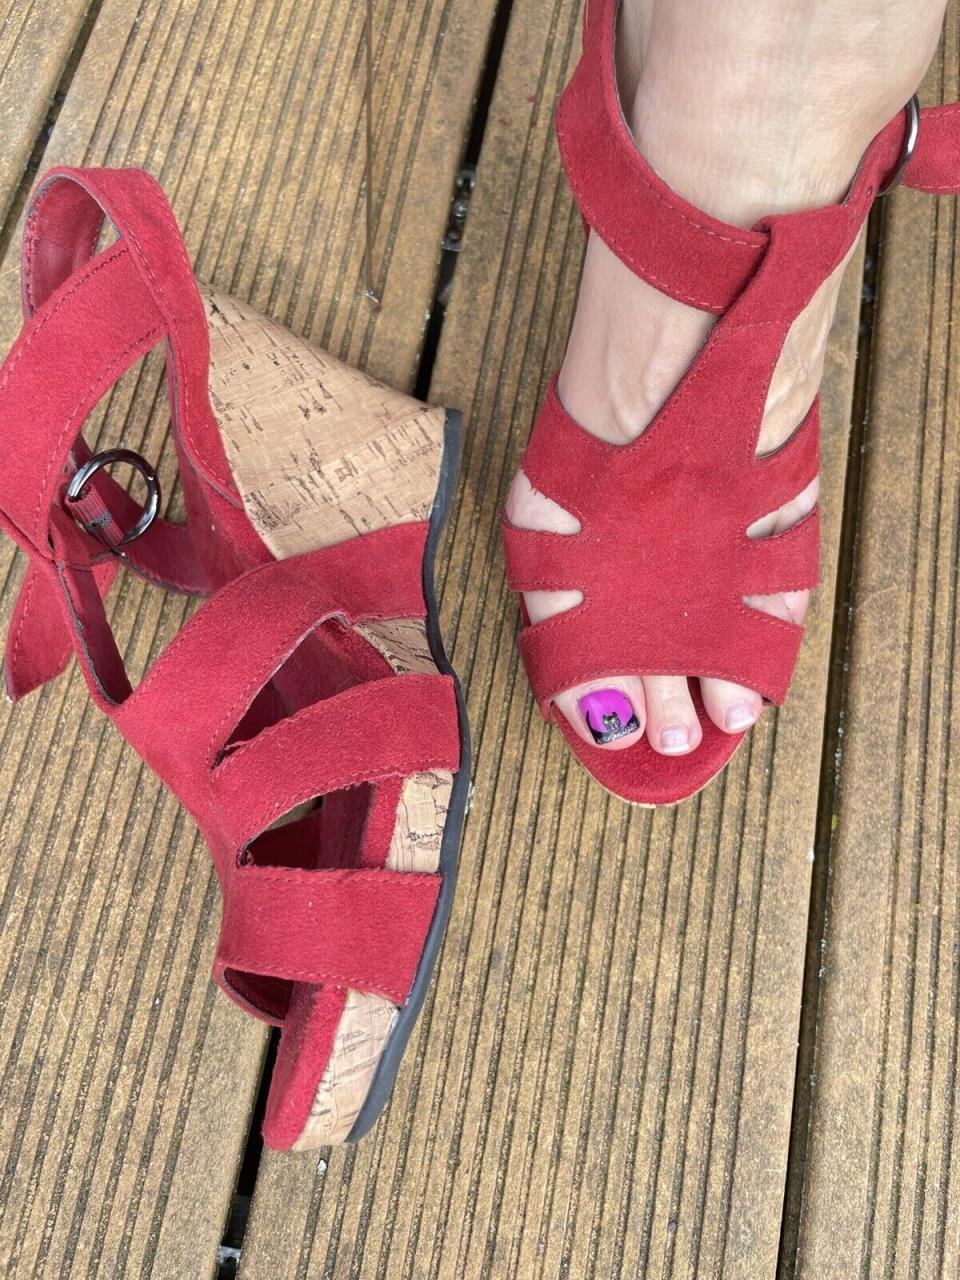 Keilabsatz Sandale,39, 10cm, Rot, Wildlederoptik | eBay